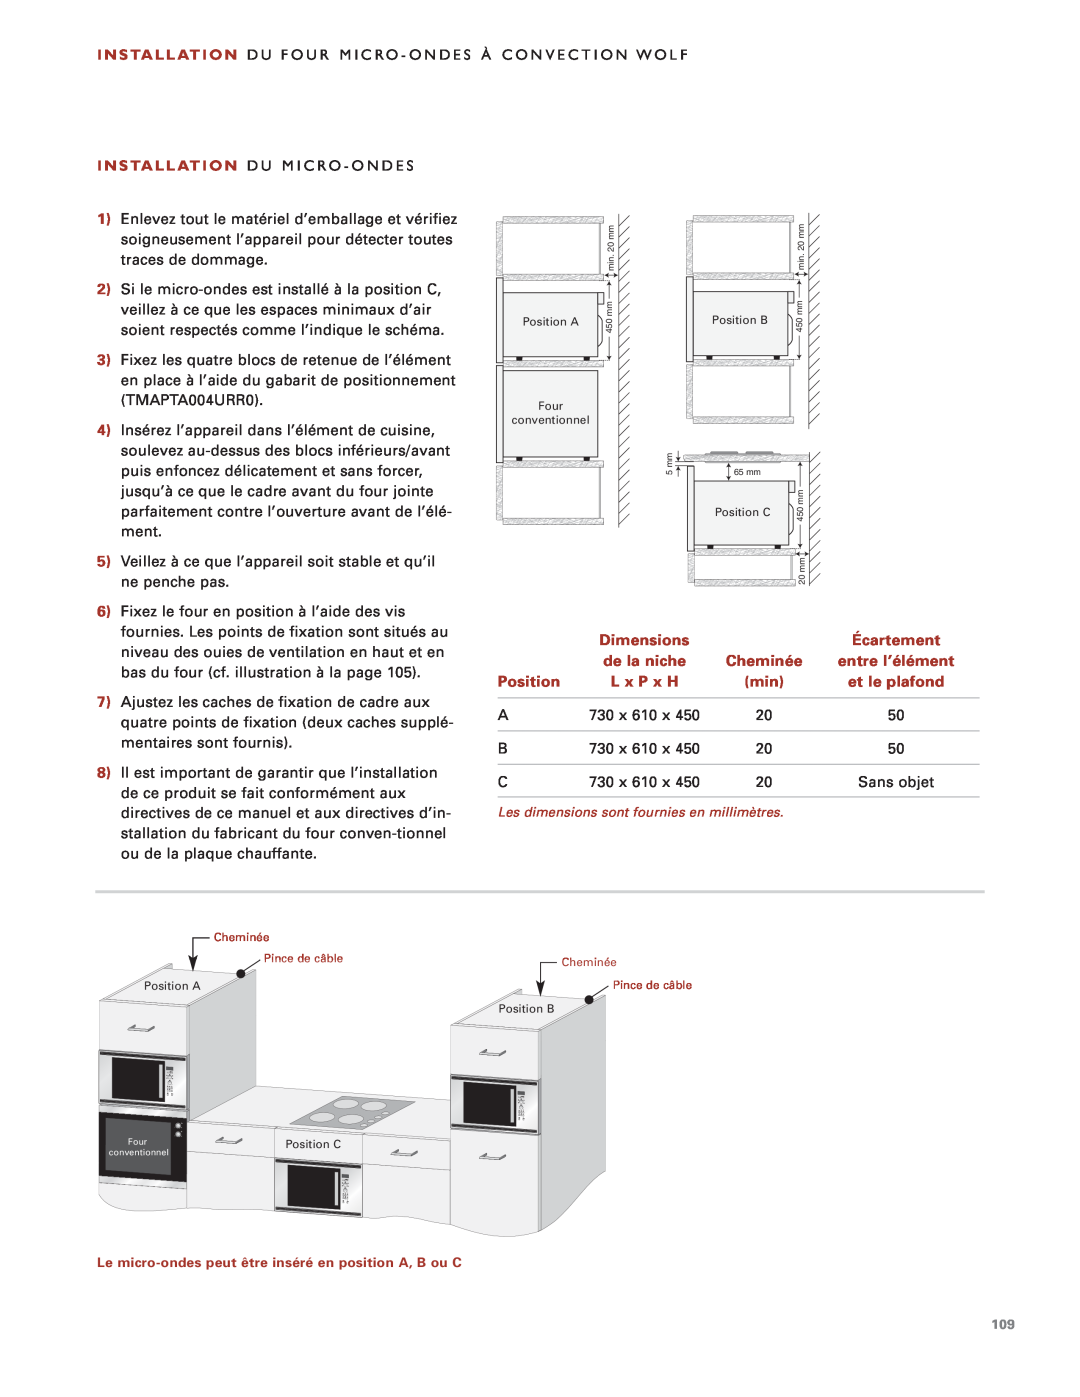 Wolf Appliance Company ICBMW30-230 Dimensions, Écartement, de la niche, Cheminée, entre l’élément, Position, L x P x H 